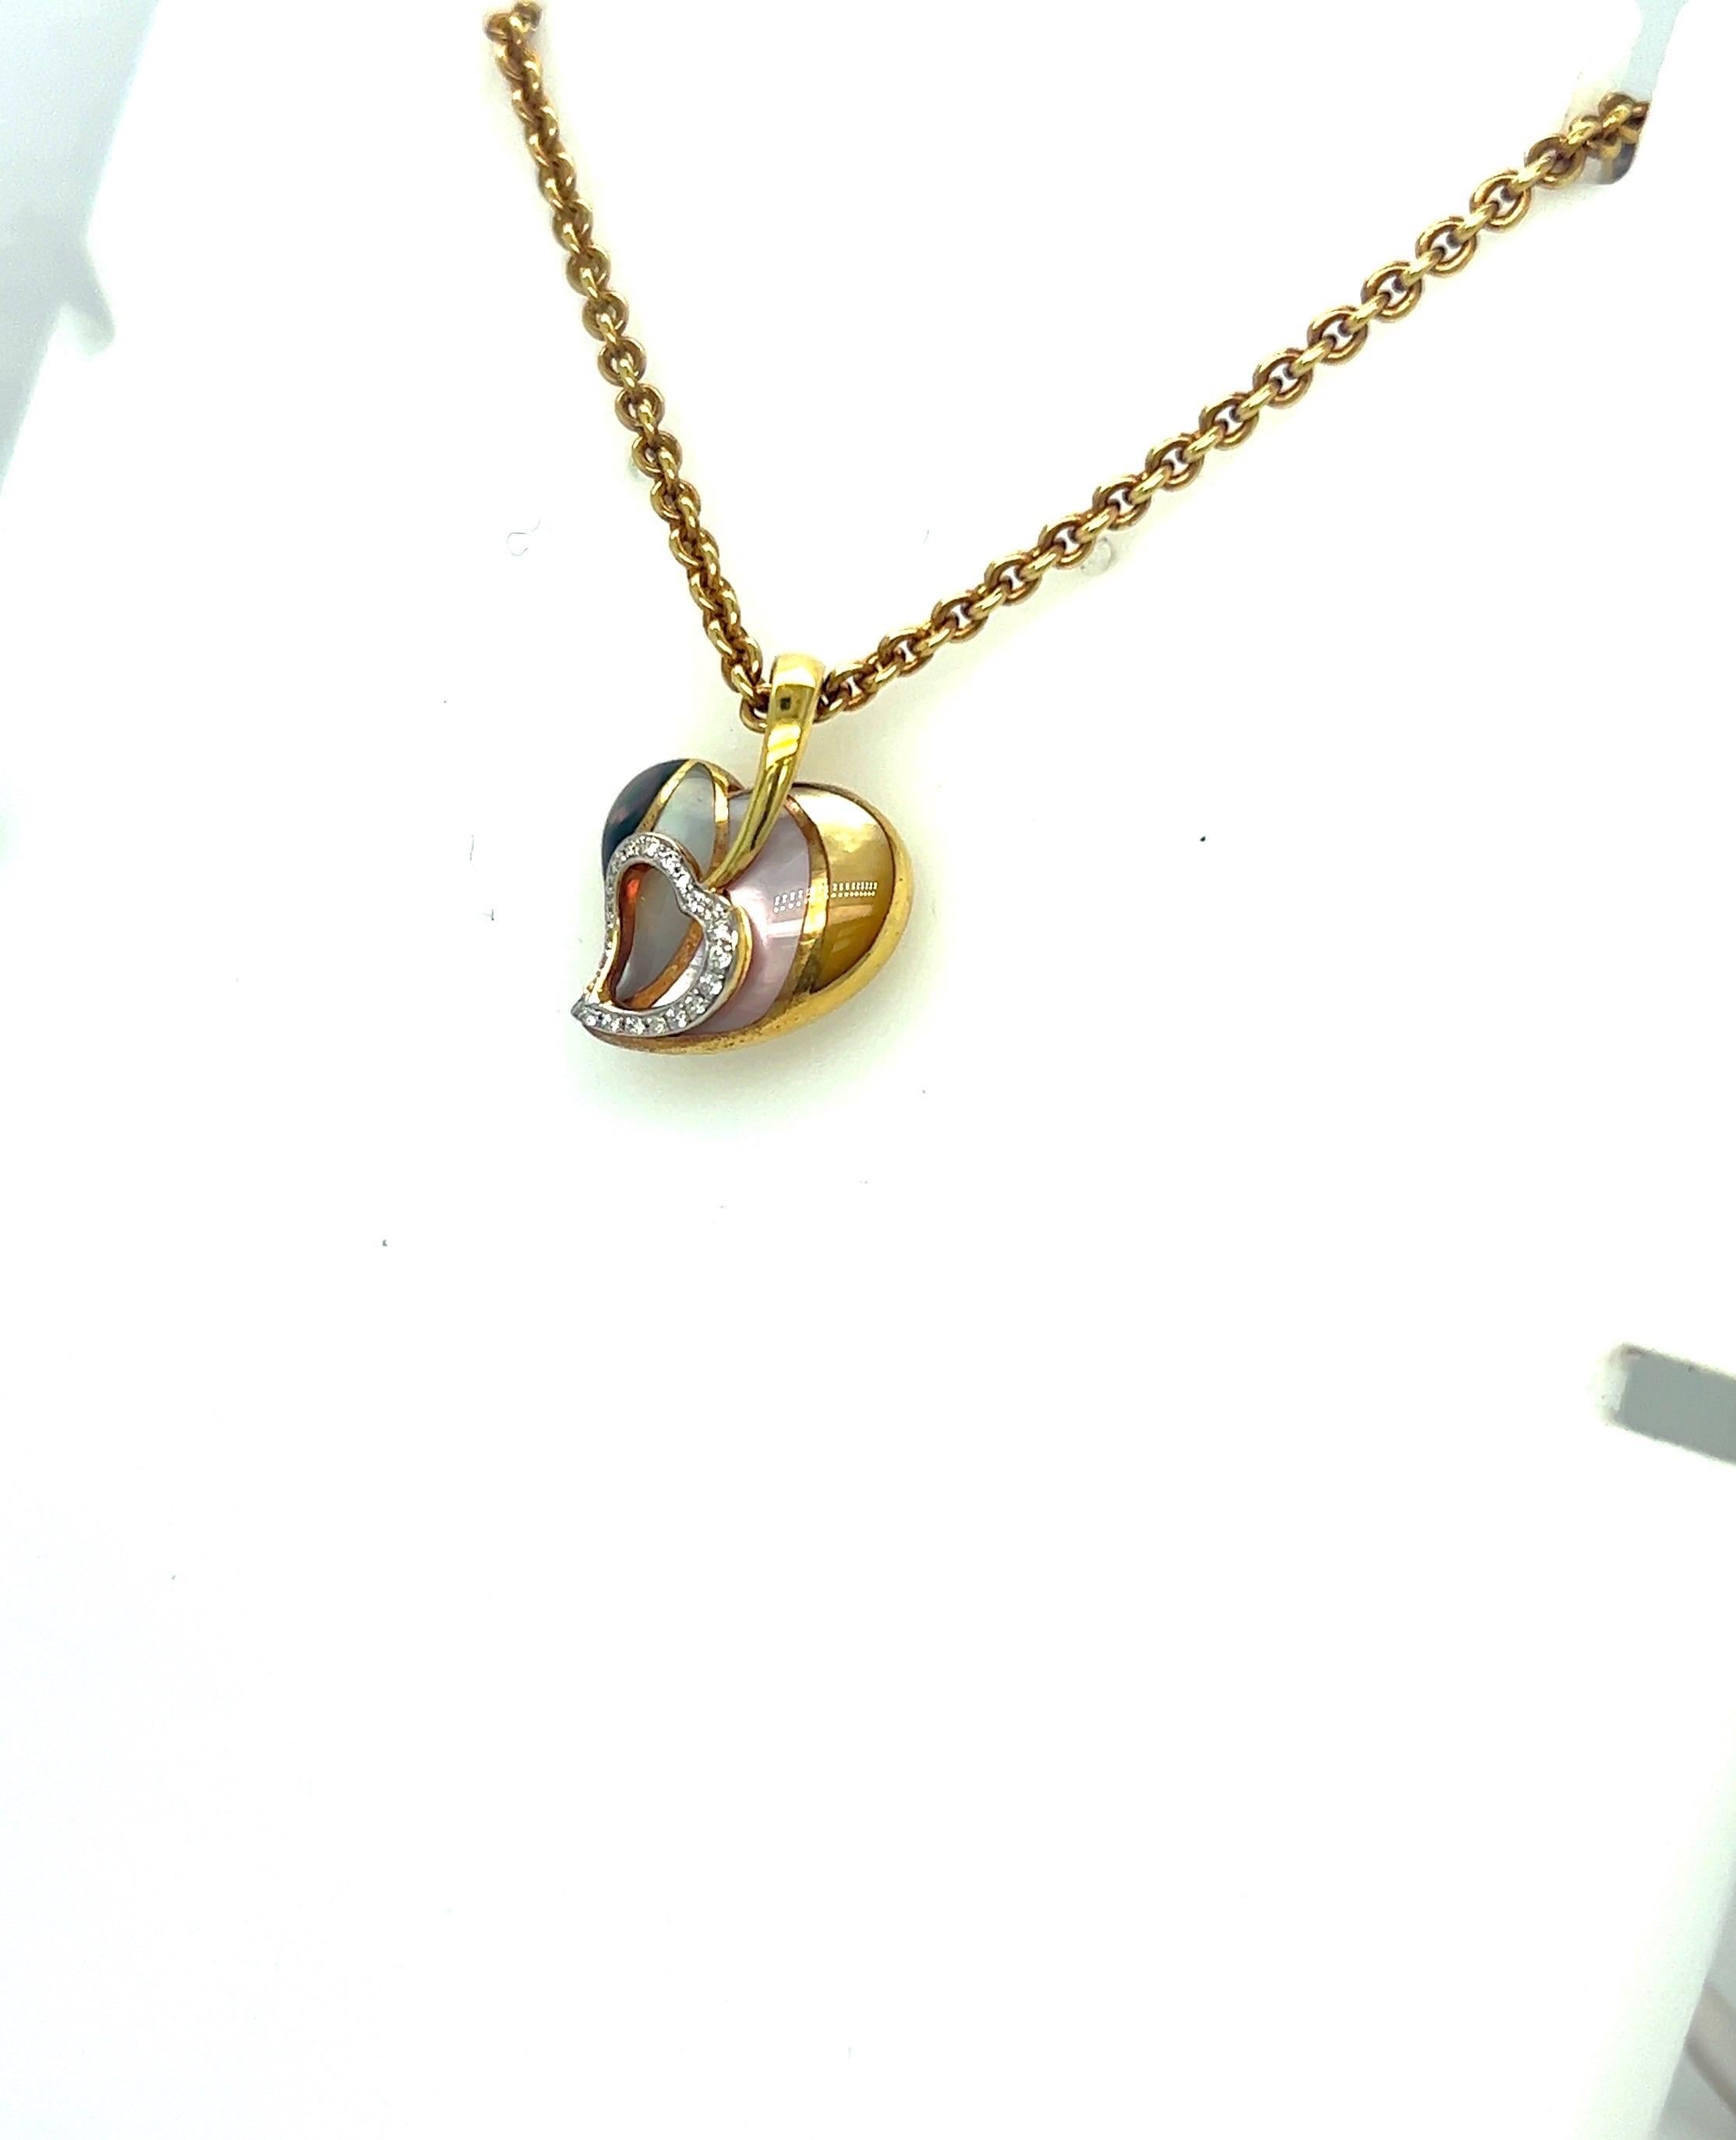 Conçu par Asch Grossbardt, ce collier pendentif en or jaune 18 carats est très facile à porter. Design/One avec un cœur de 1/2